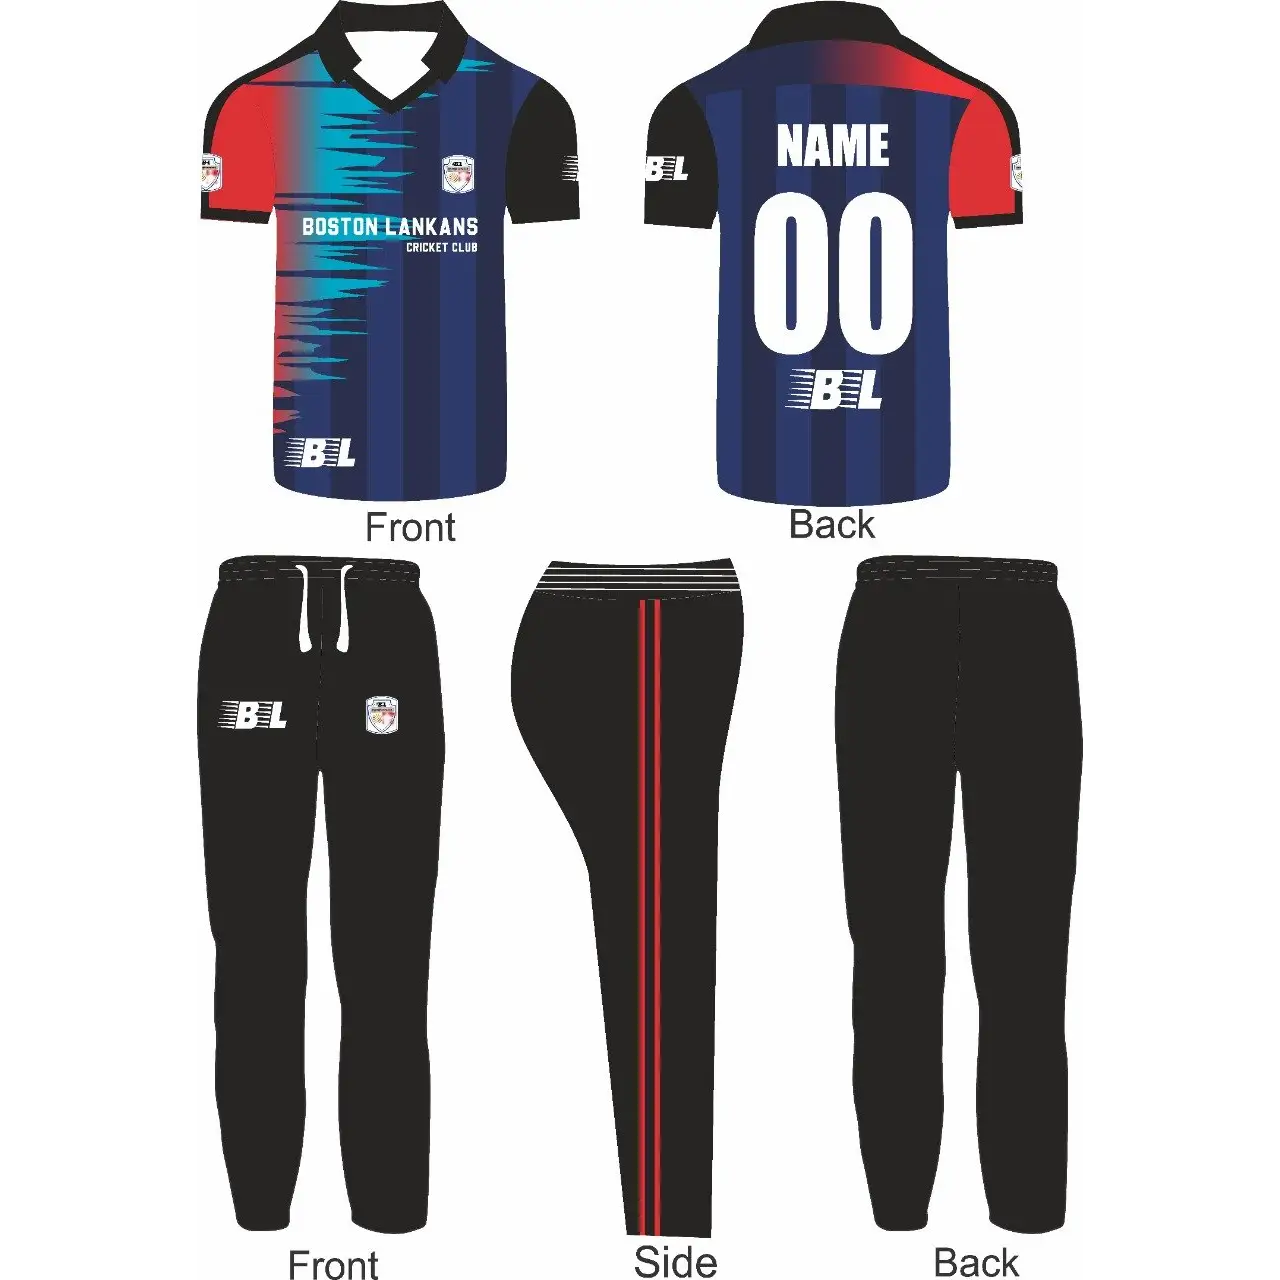 http://www.cricketbestbuy.com/cdn/shop/files/cricket-sports-jersey-trouser-kit-black-blue-red-2-piece-set-custom-wear-2pc-full-cbb-best-buy-903.webp?v=1684330709